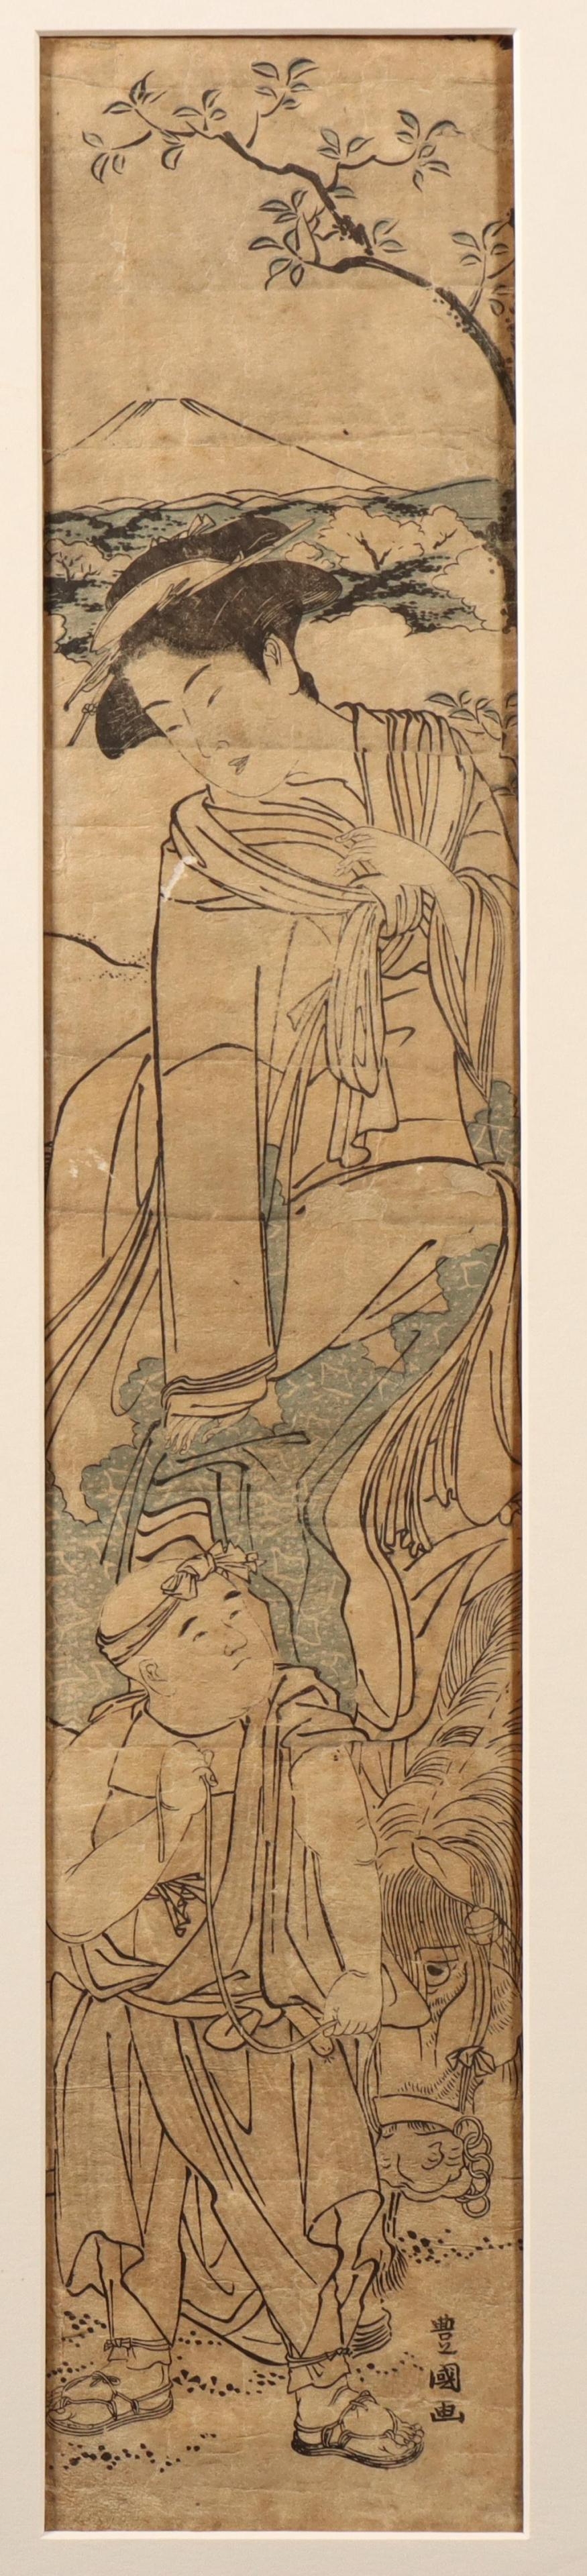 Woman with servant, Mount Fuji in the distance - Utagawa Toyokuni